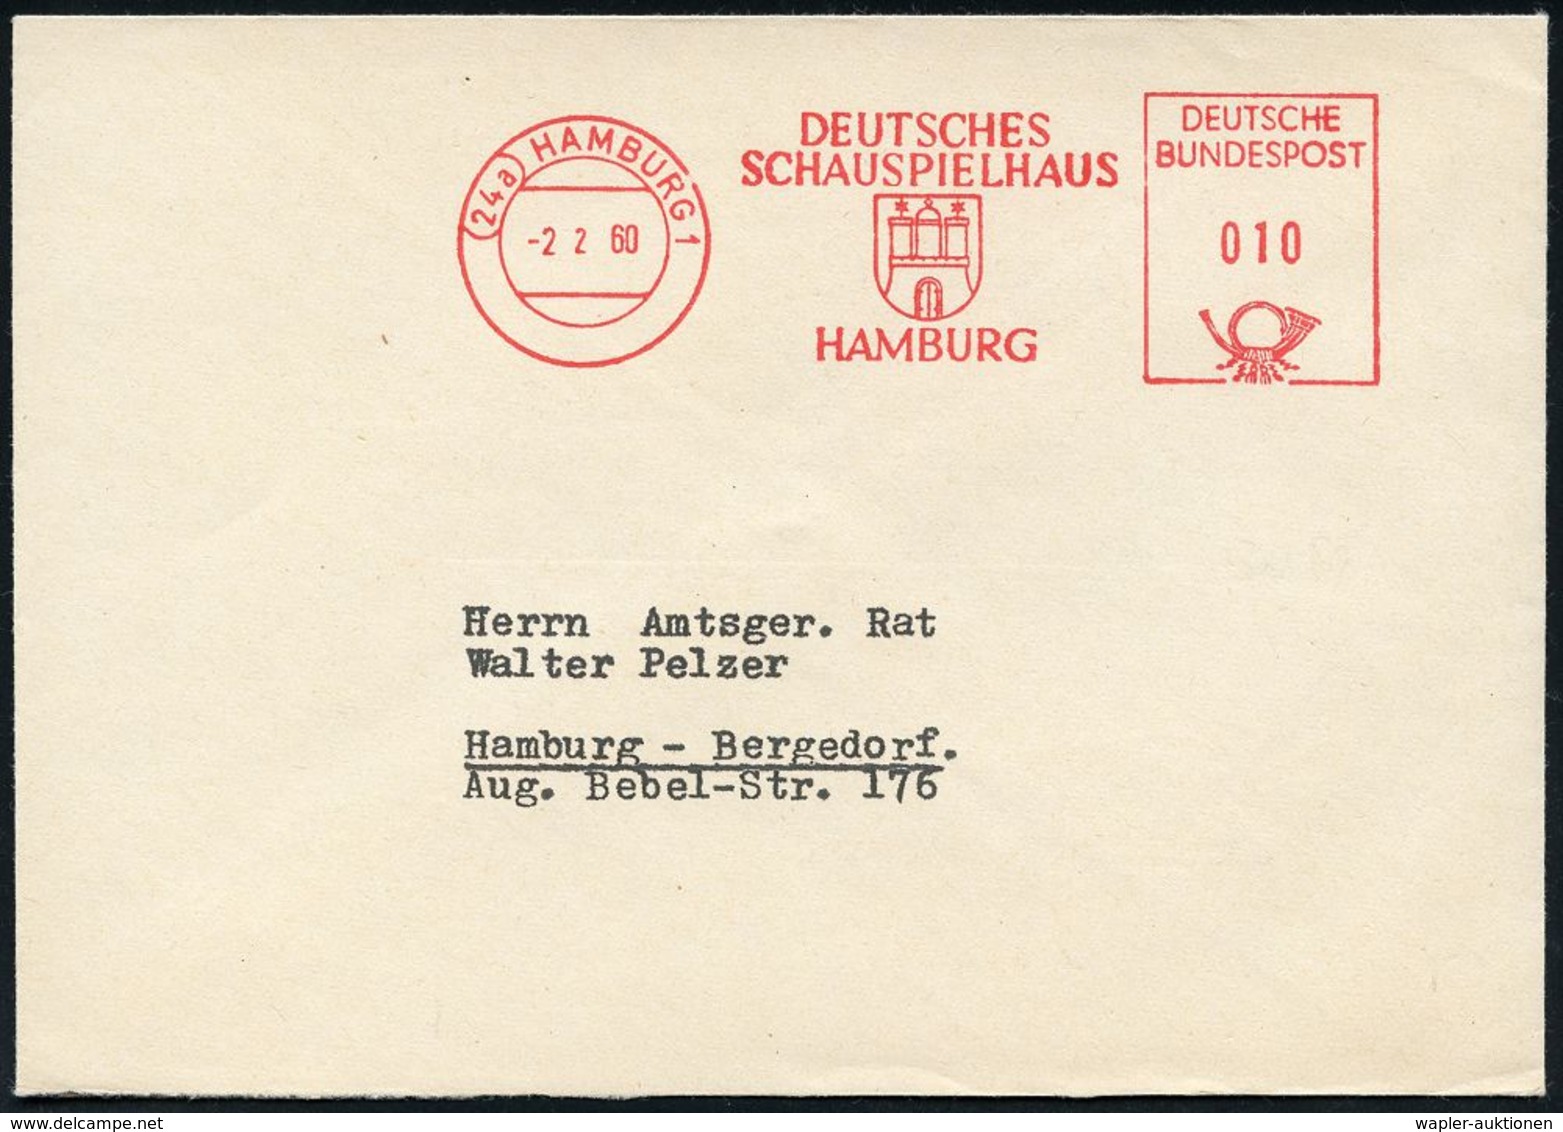 BÜHNE / THEATER / THEATER-FESTIVALS : (22a) HAMBURG 1/ DEUTSCHES/ SCHAUSPIELHAUS 1960 (2.2.) AFS (Stadtwappen) Rs. Abs.- - Theatre